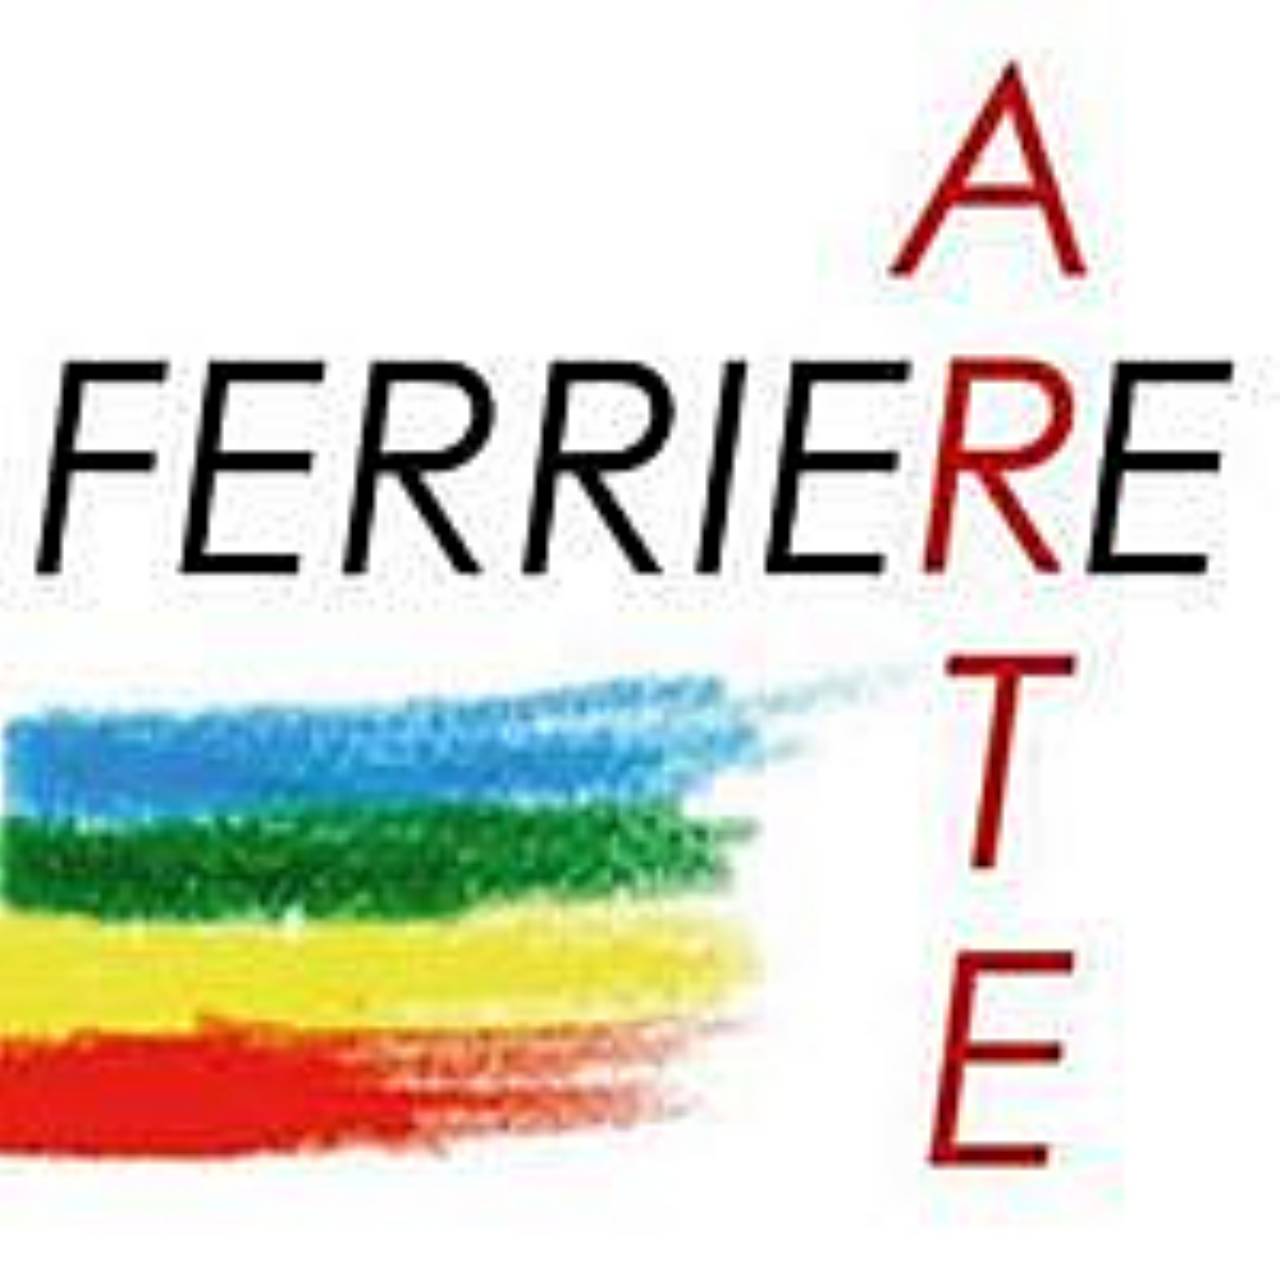 FerriereArte